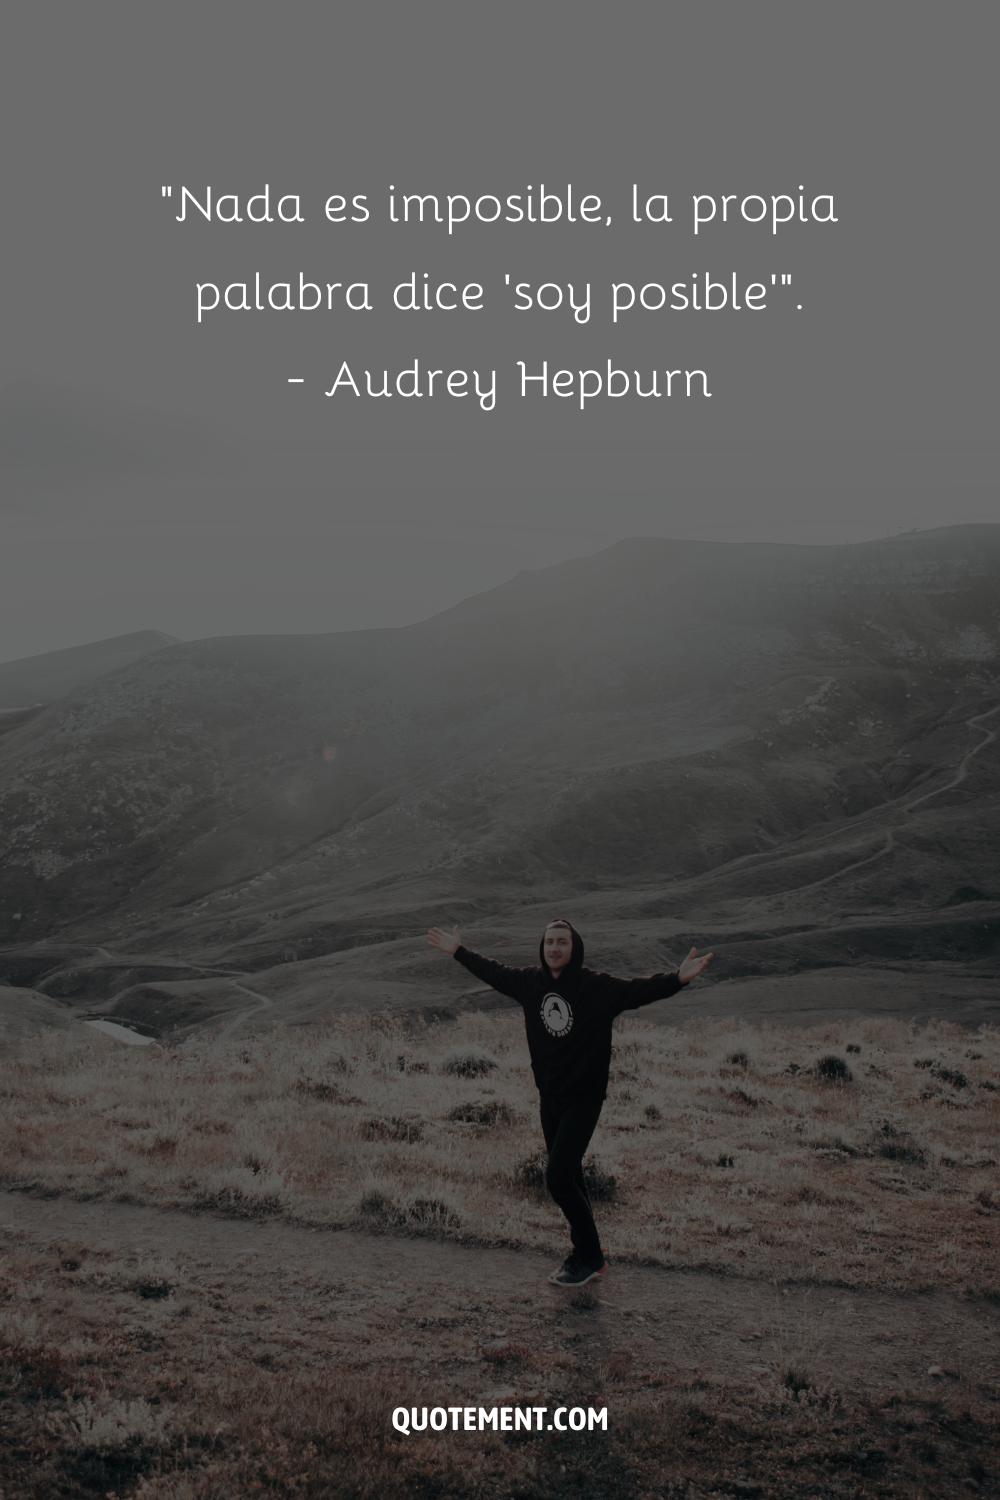 "Nada es imposible, la propia palabra dice 'soy posible'". - Audrey Hepburn